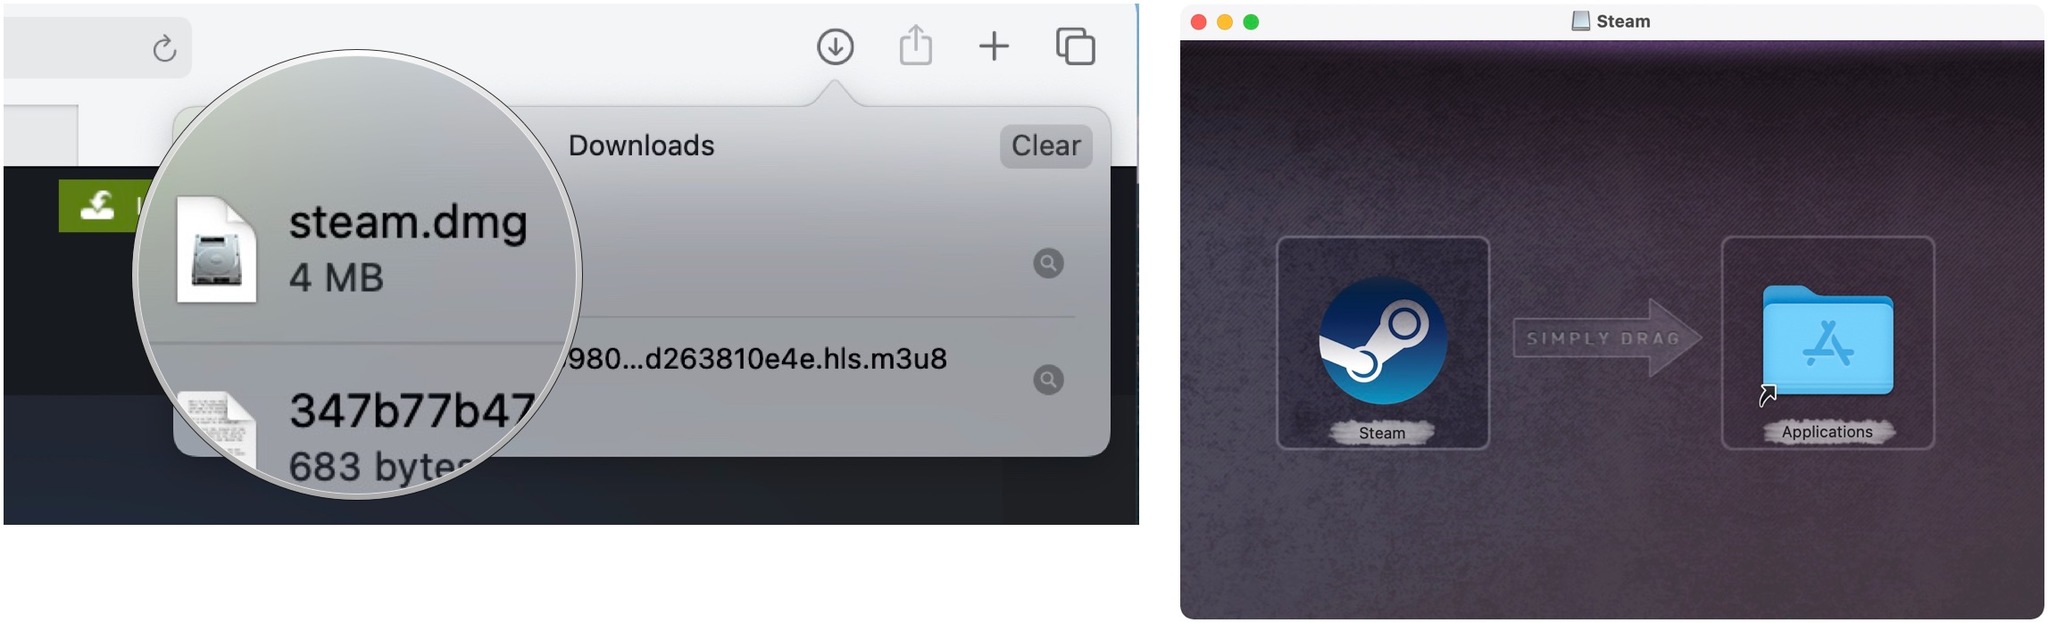 Pour installer Steam sur Mac, cliquez sur le bouton Afficher les téléchargements.  Double-cliquez sur steam.dmg pour lancer le programme d'installation.  Faites glisser Steam dans le dossier Applications.  Sortez de la fenêtre.